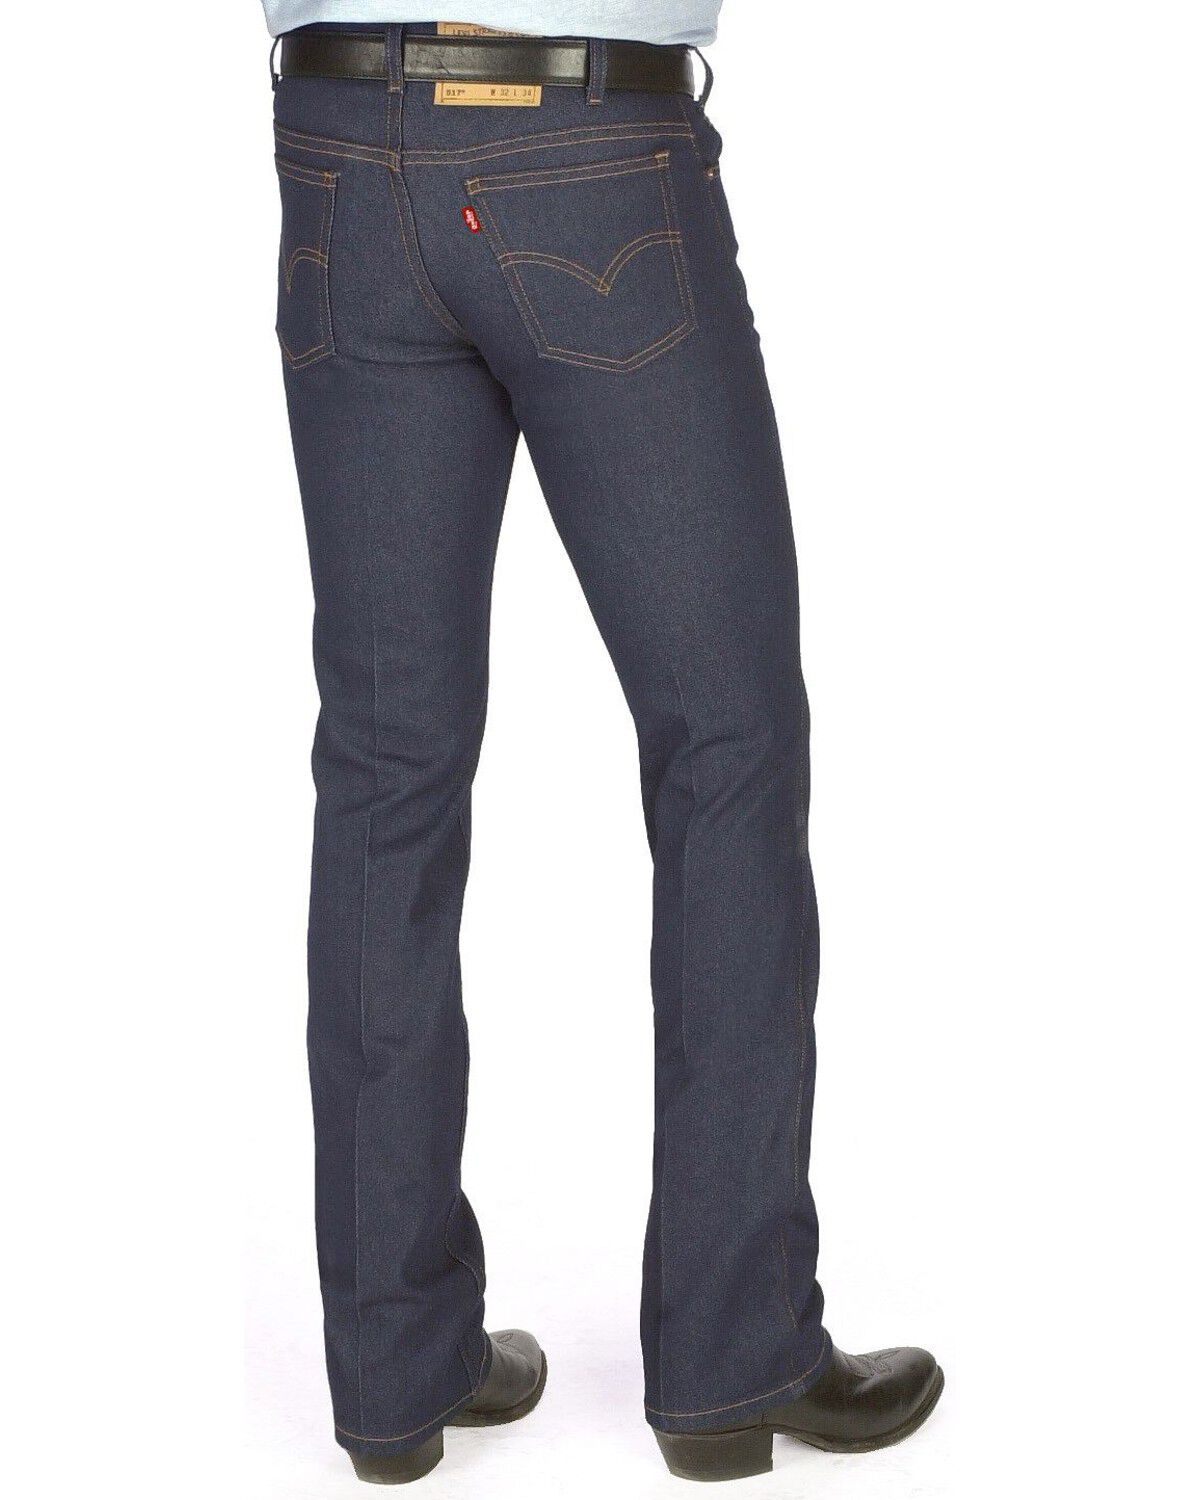 levis cowboy cut jeans